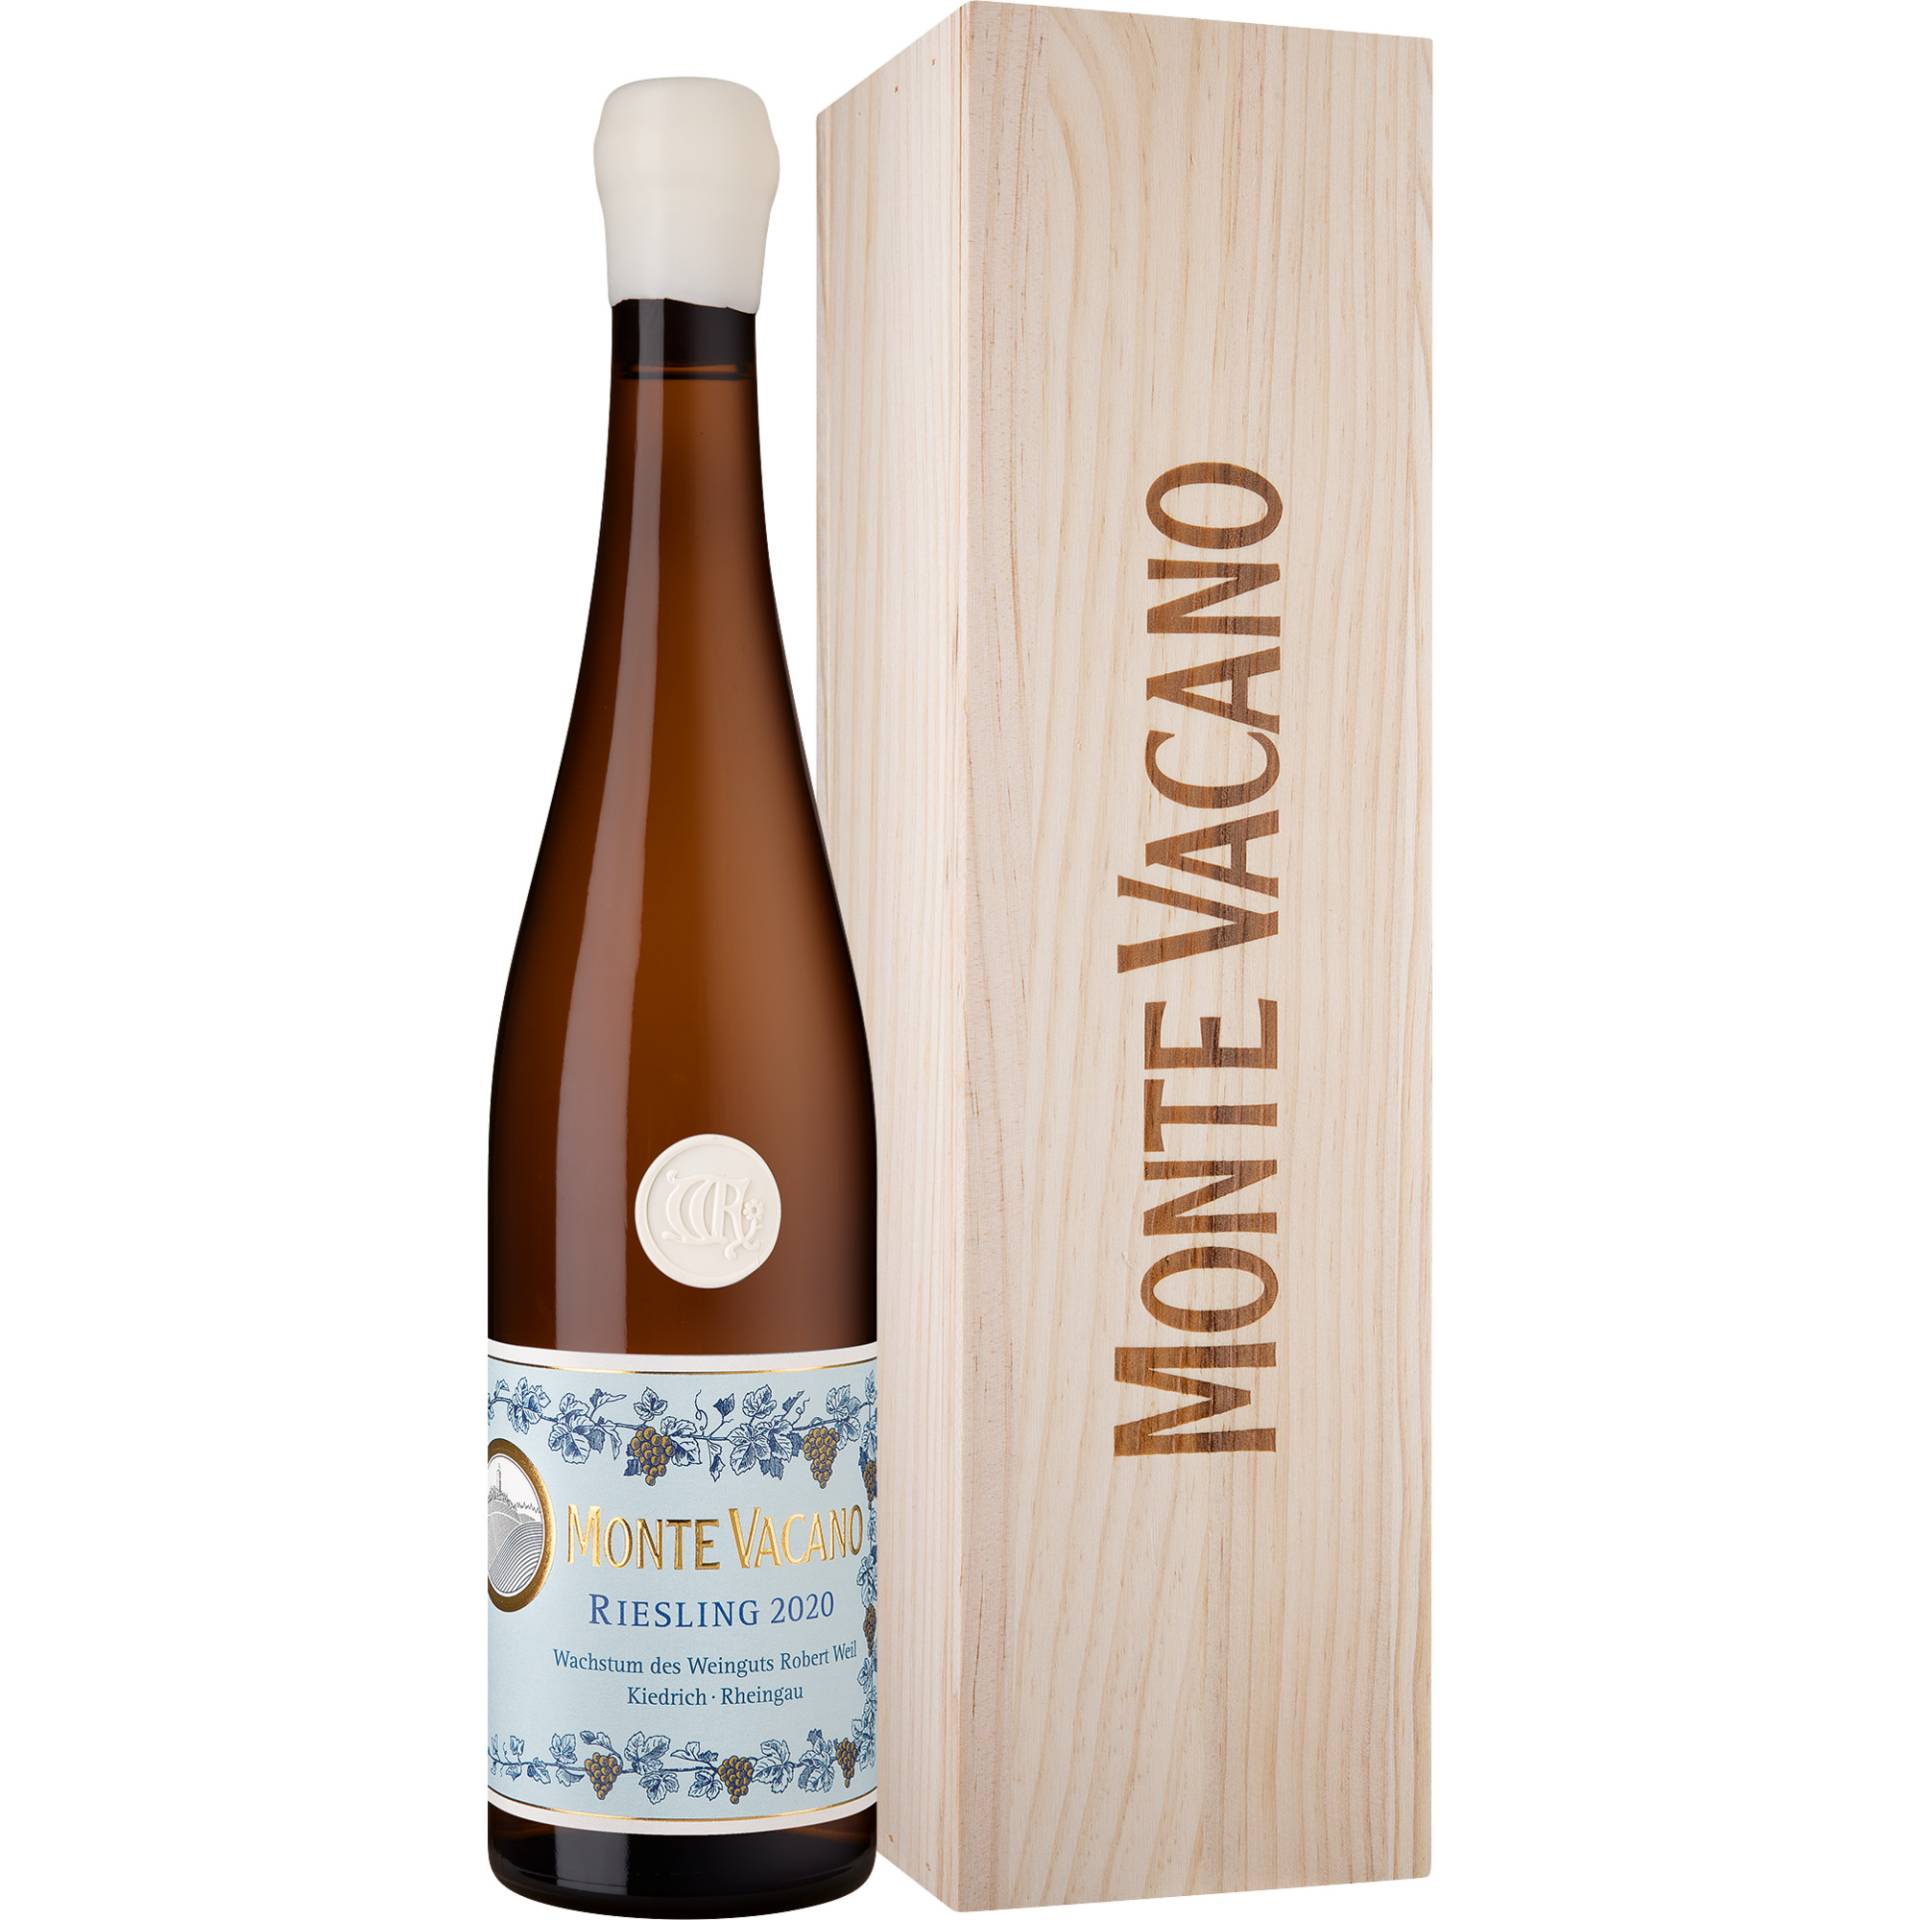 Monte Vacano Riesling, Trocken, Rheingau, Rheingau, 2020, Weißwein von Weingut Robert Weil, D - 65399 Kiedrich